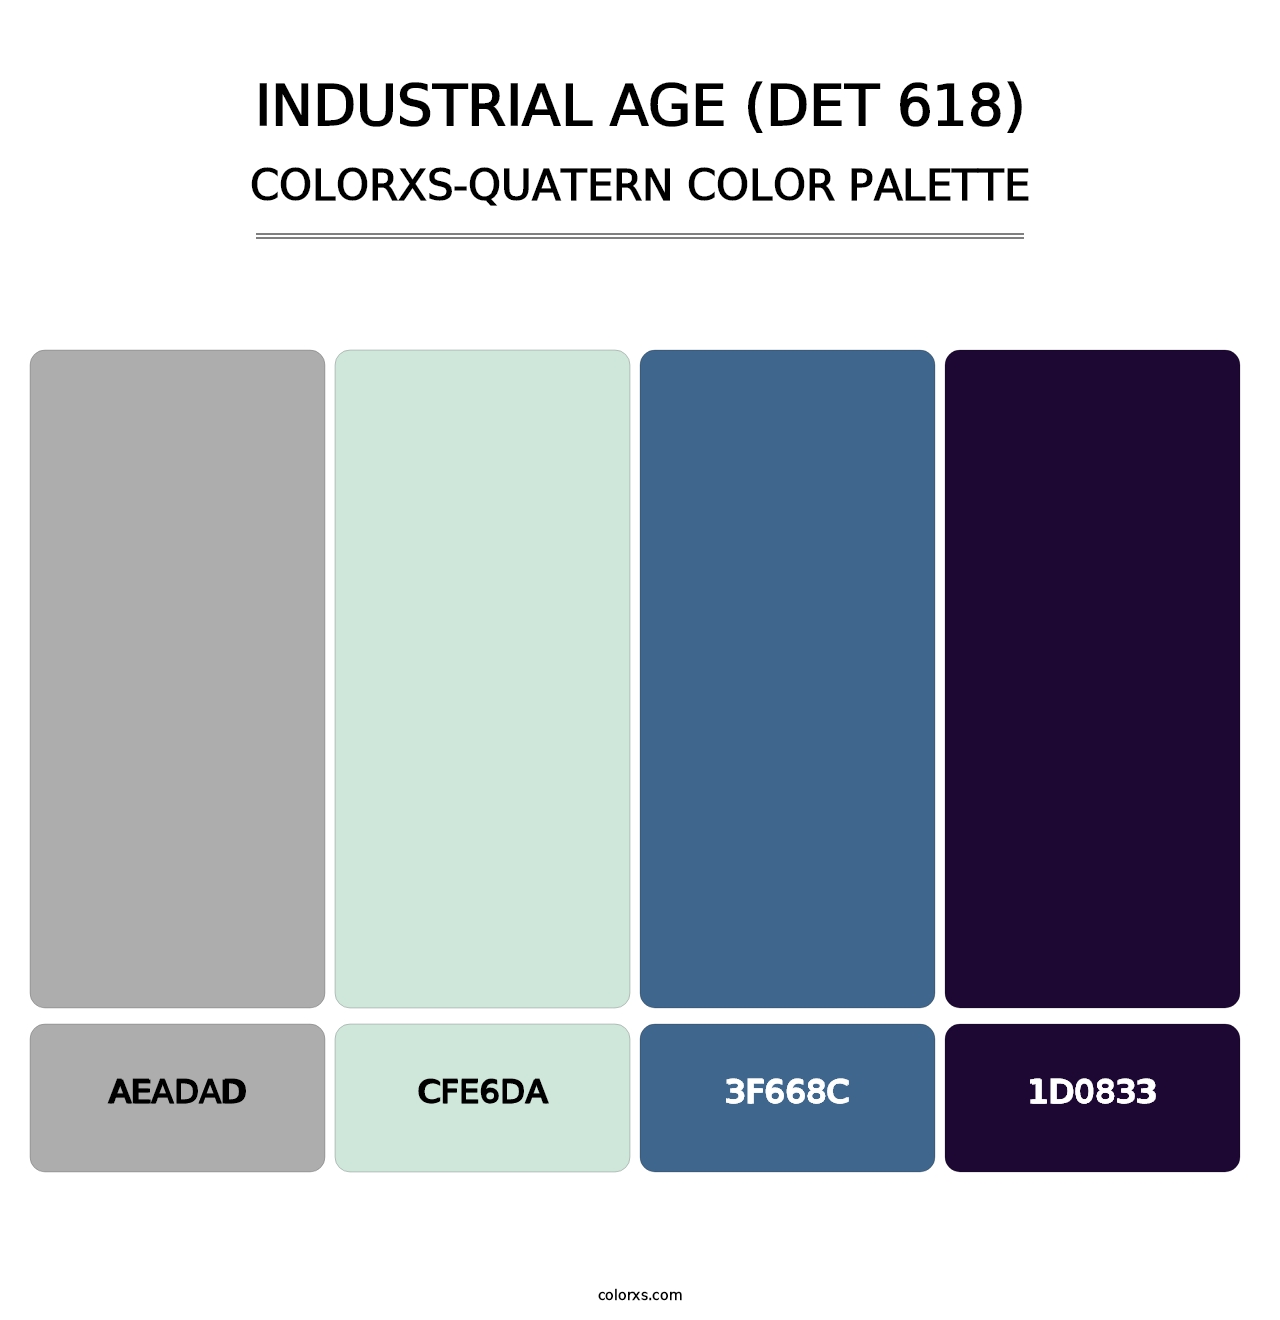 Industrial Age (DET 618) - Colorxs Quatern Palette